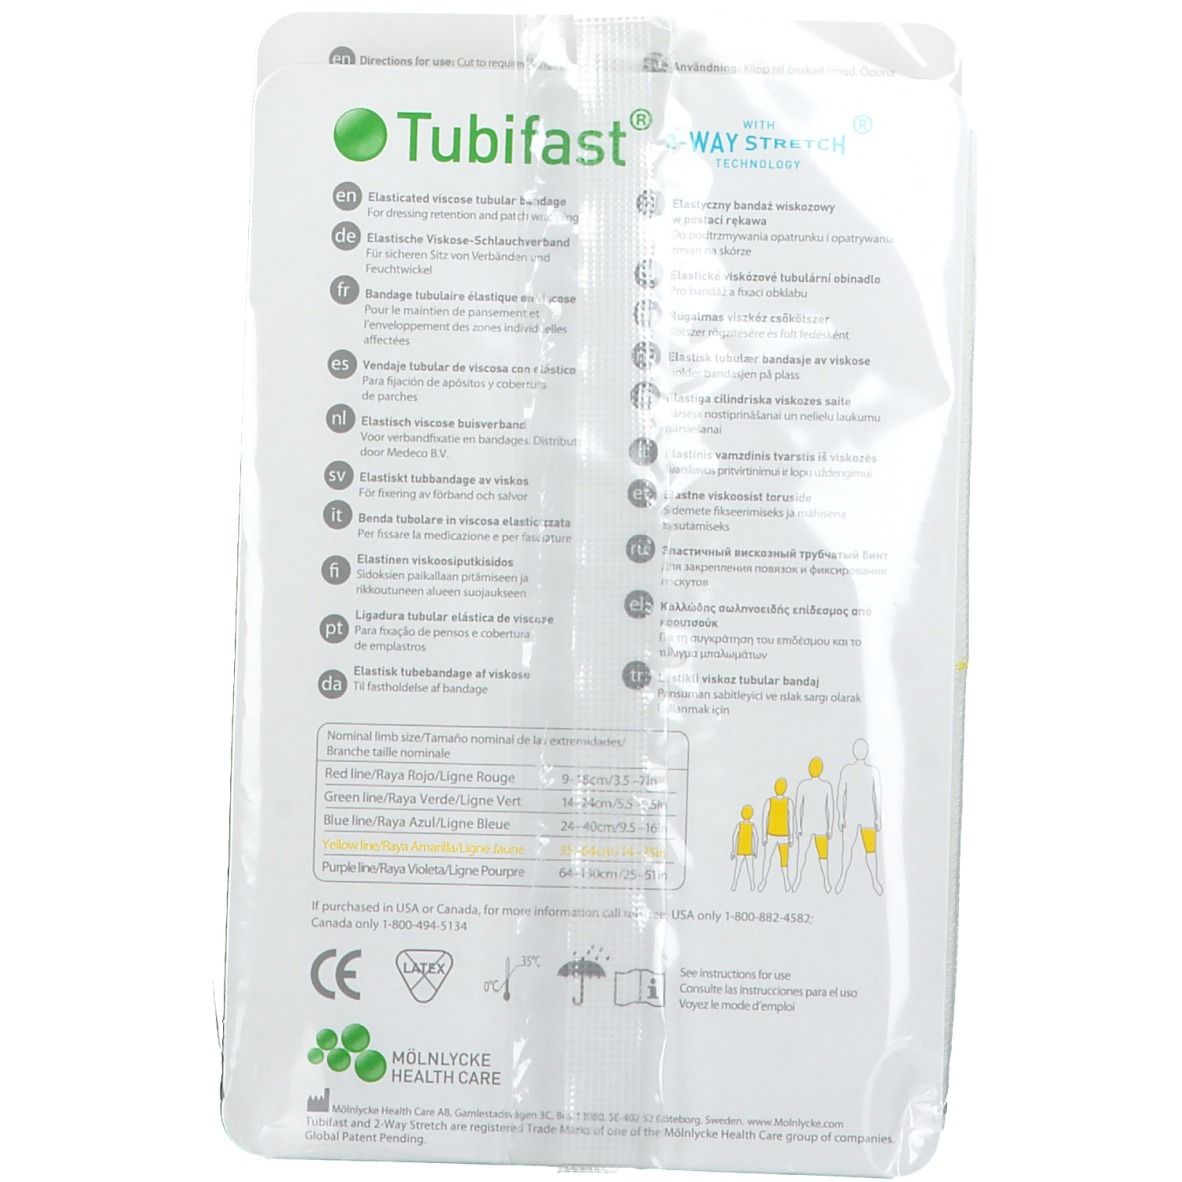 Tubifast 2-Way Stretch 10,75 cm x 1 m gelb